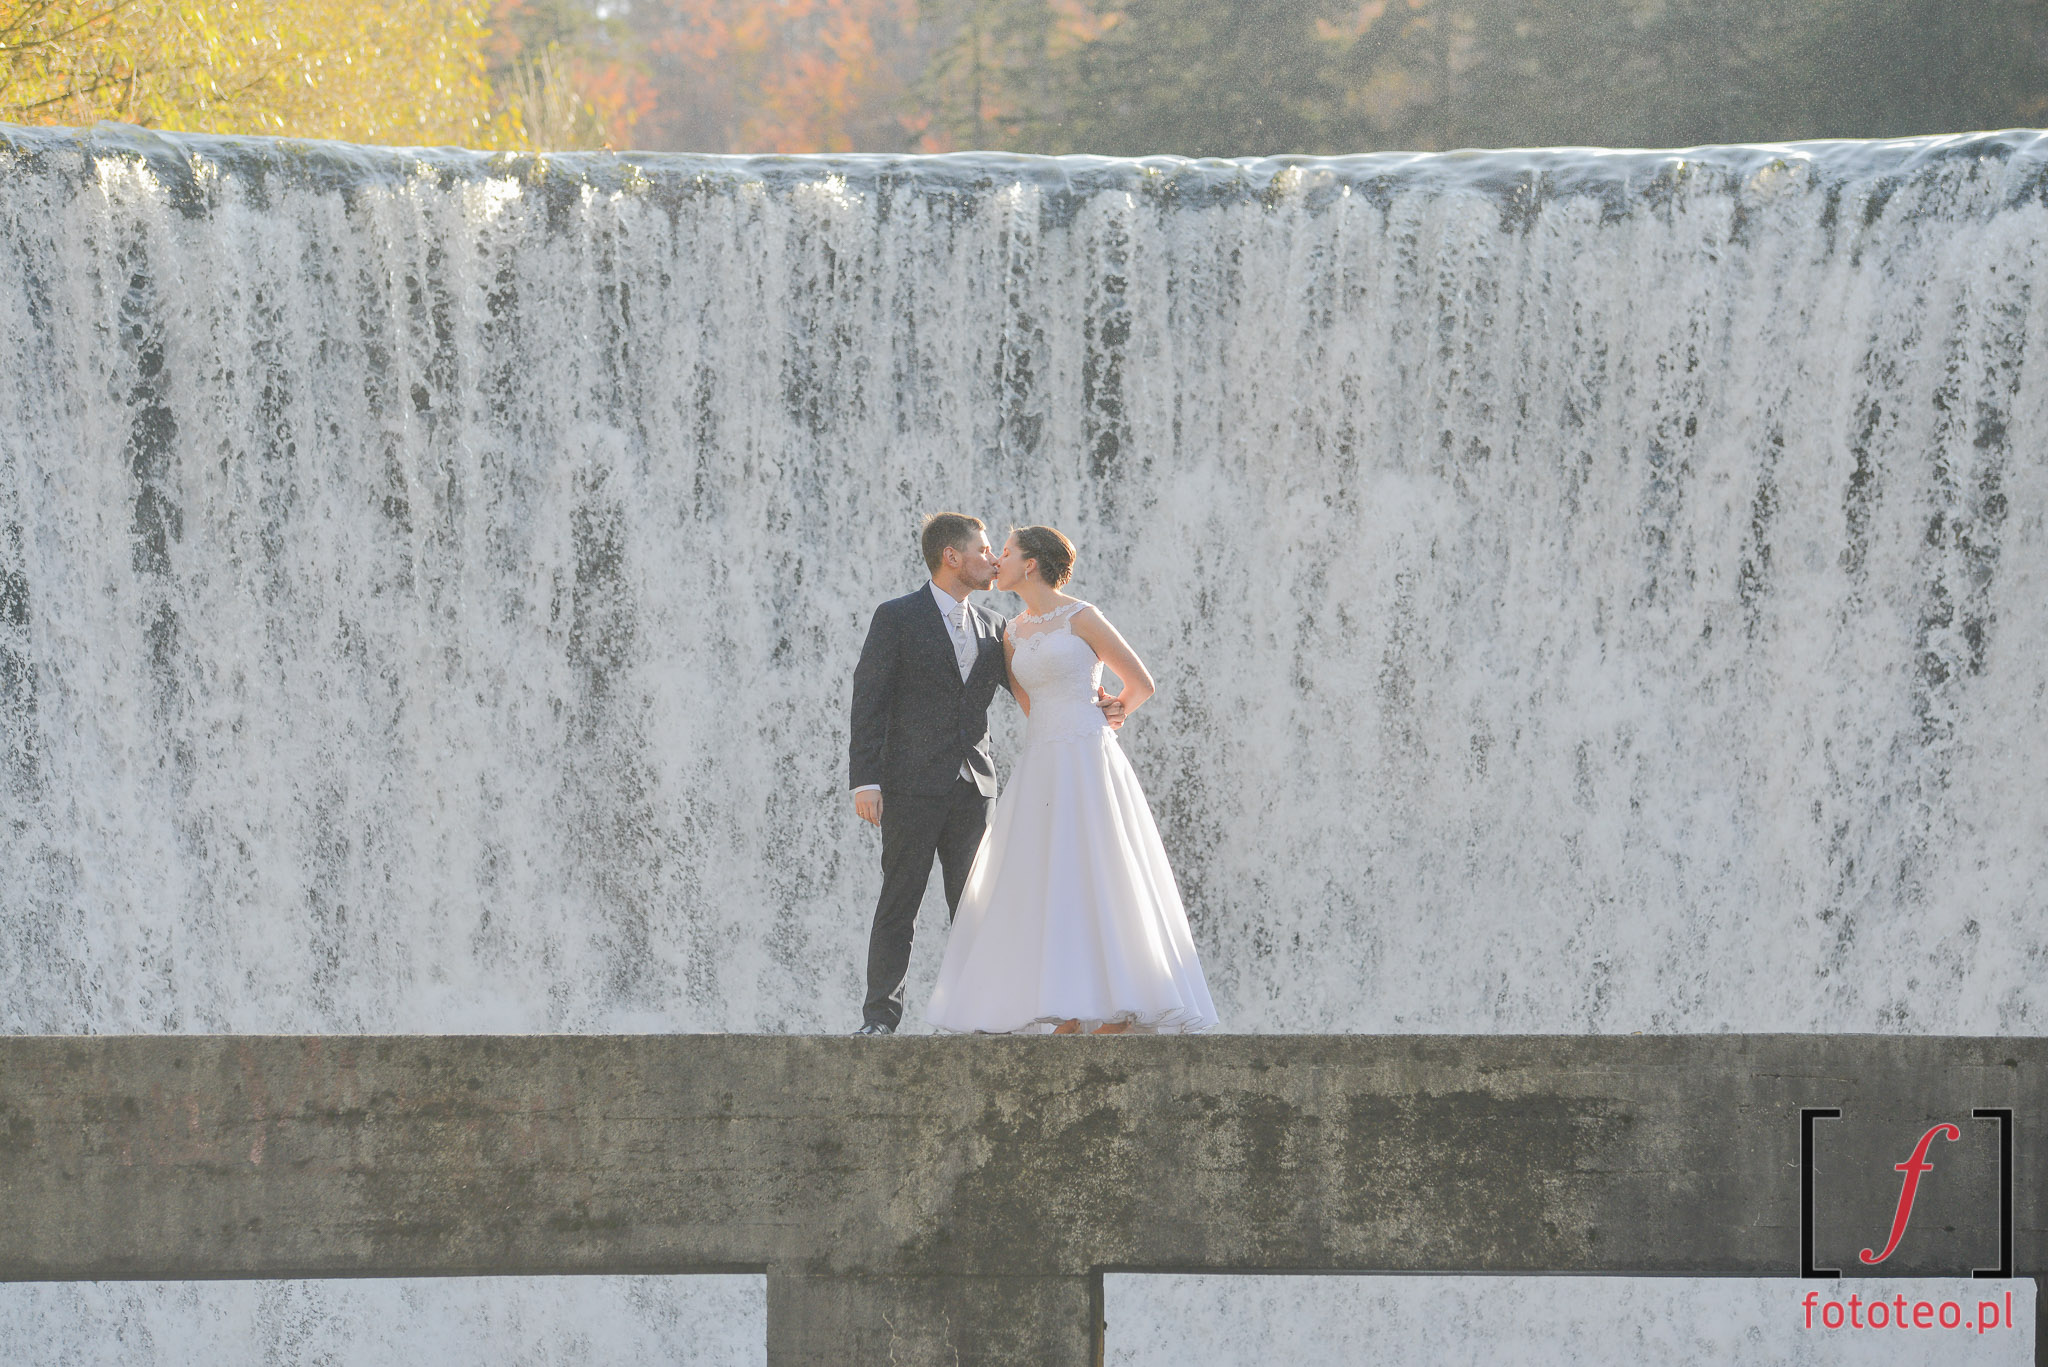 Ślubna sesja przy wodospadzie w Wiśle